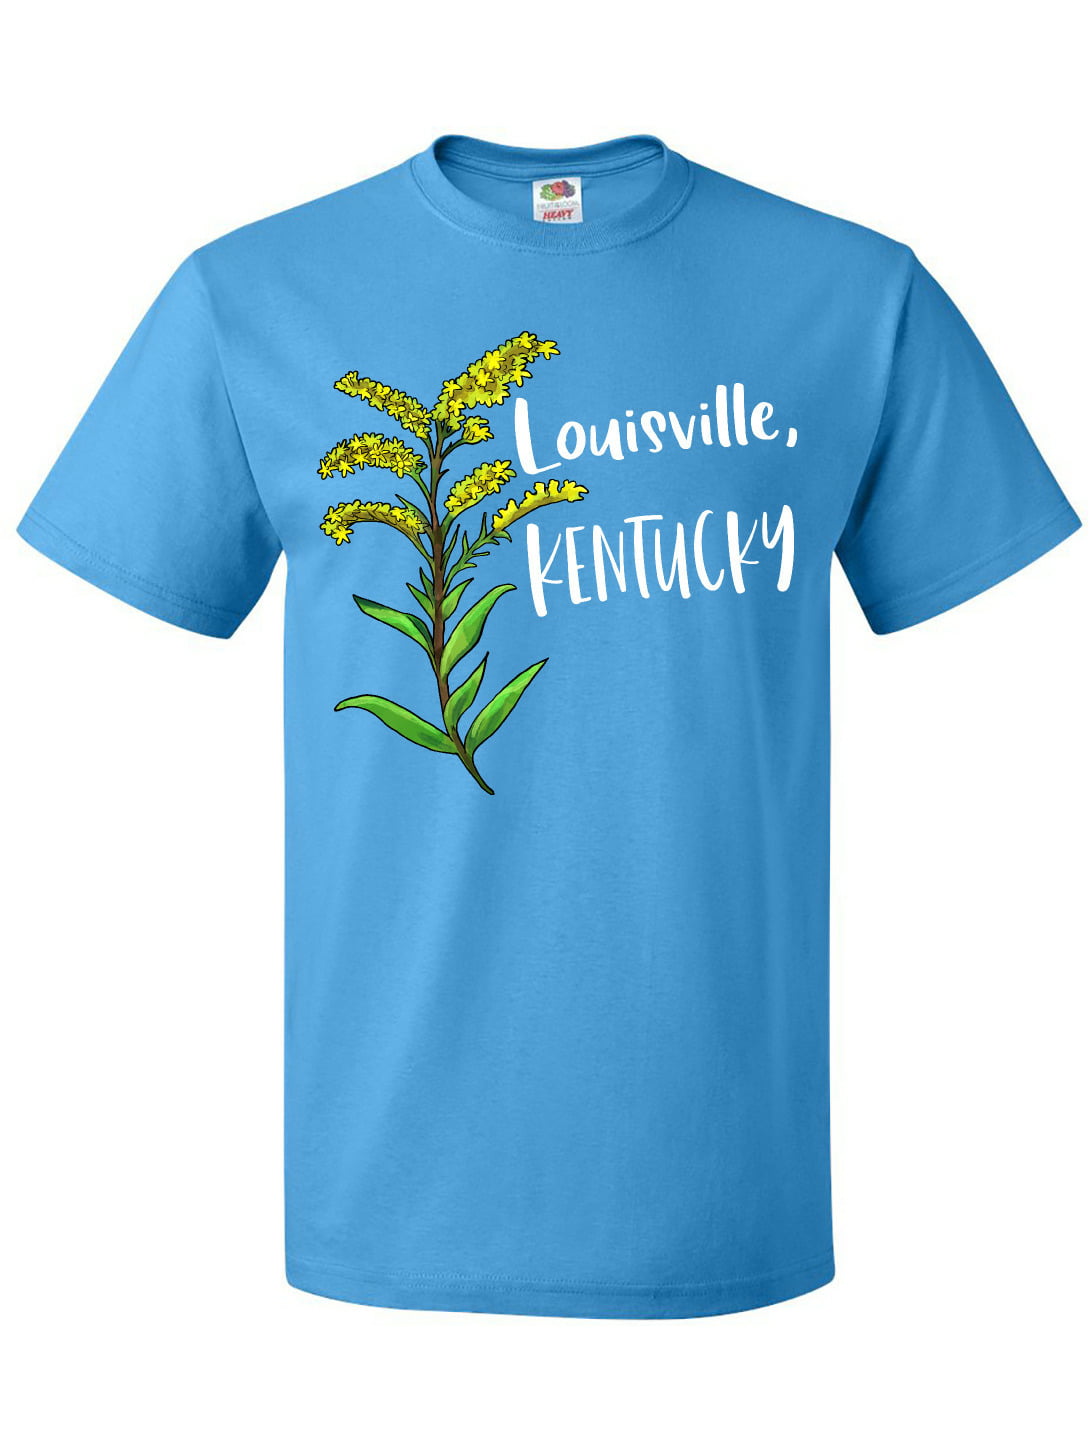 Lids Louisville Cardinals Fanatics Branded Basic Arch T-Shirt